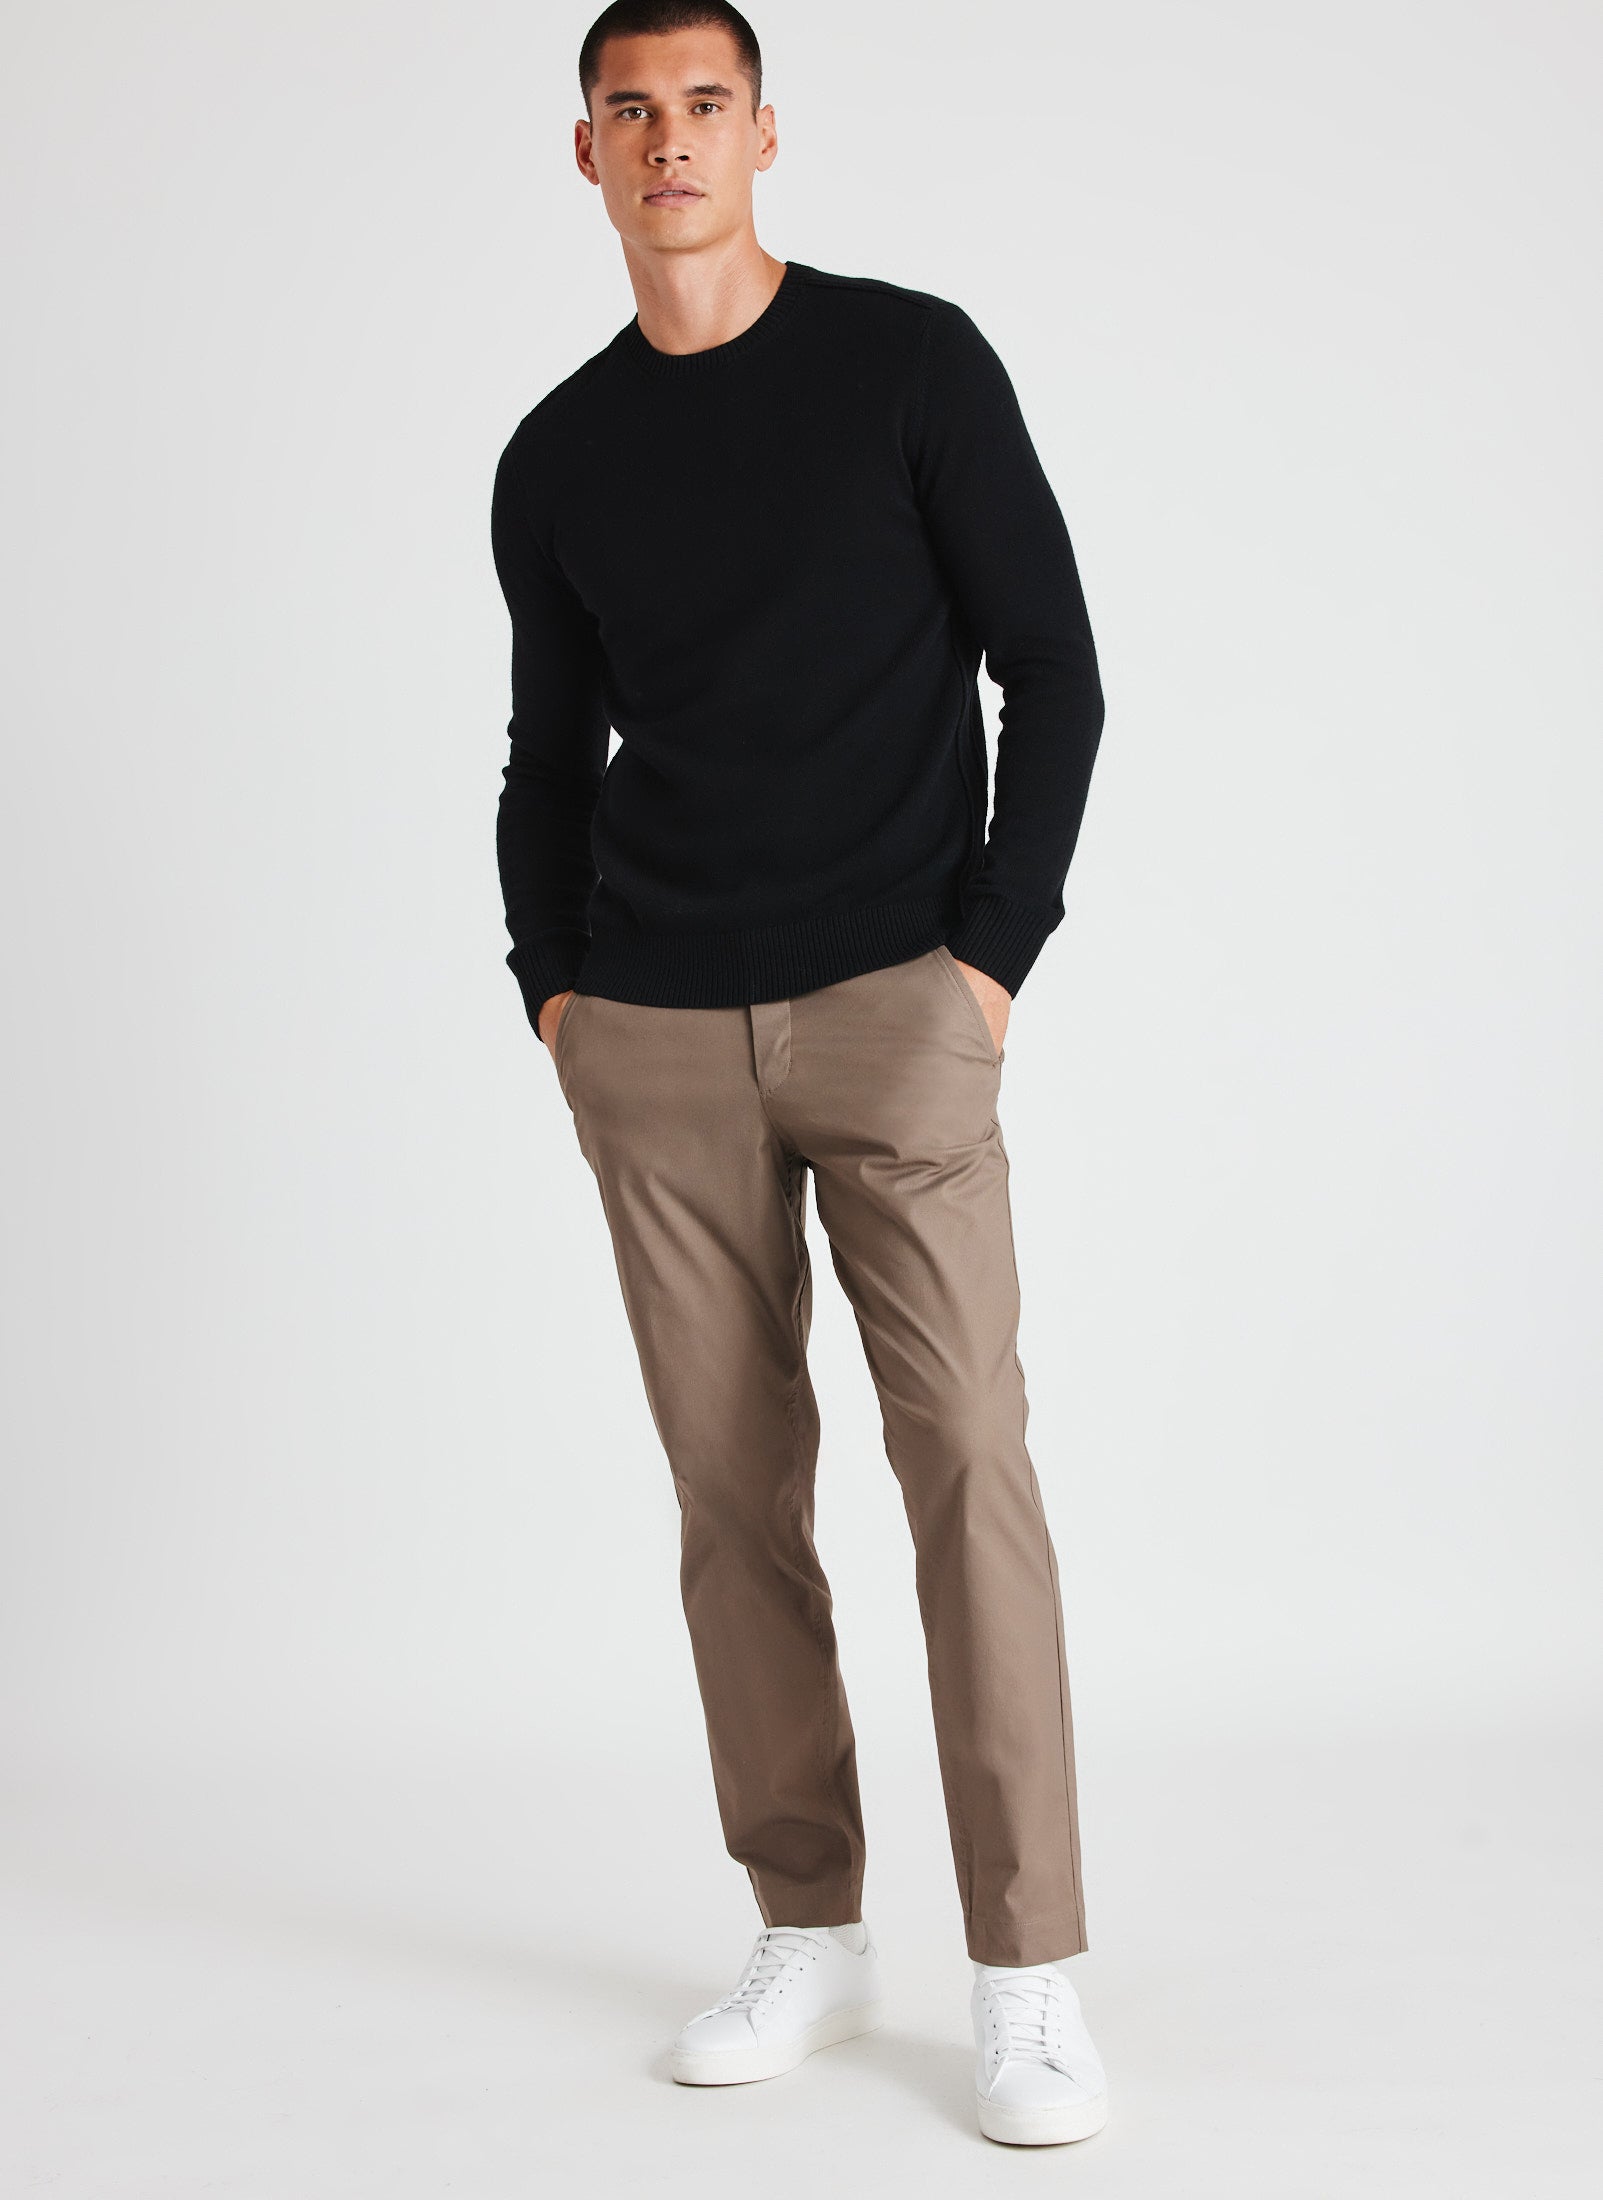 Essential Trousers ?? Model:: Adryan | 32 || Mocha